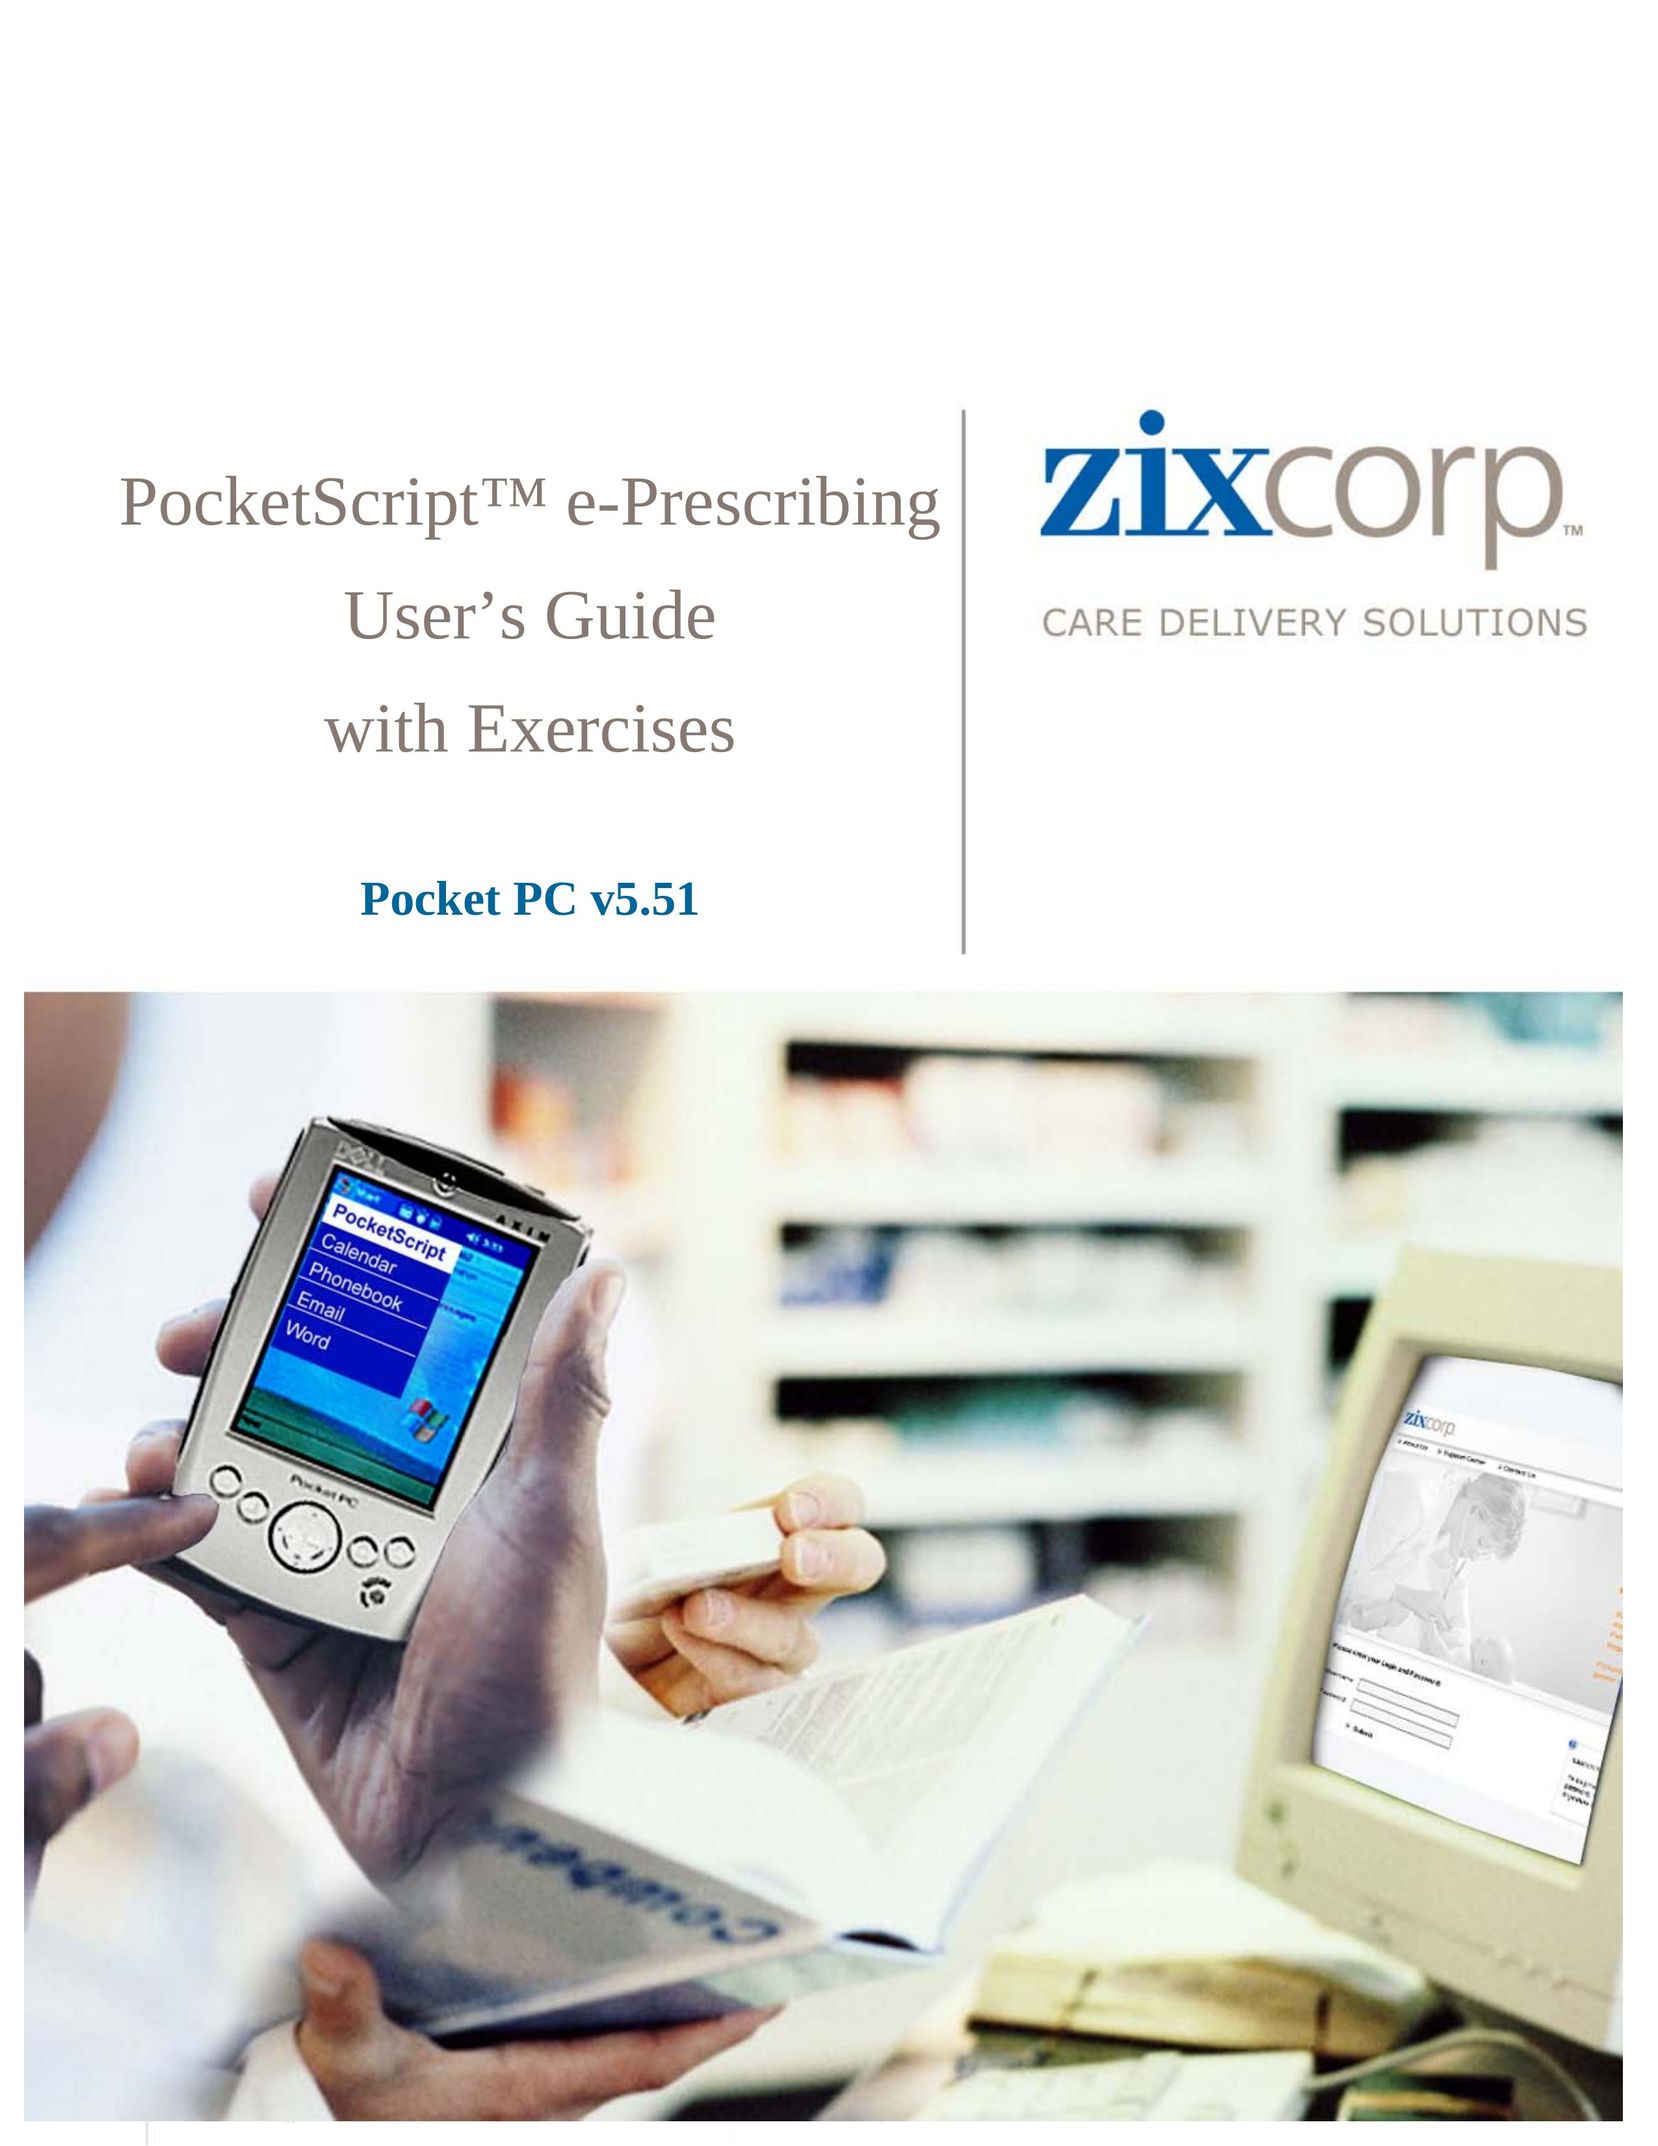 Dell PocketScriptTM PDAs & Smartphones User Manual